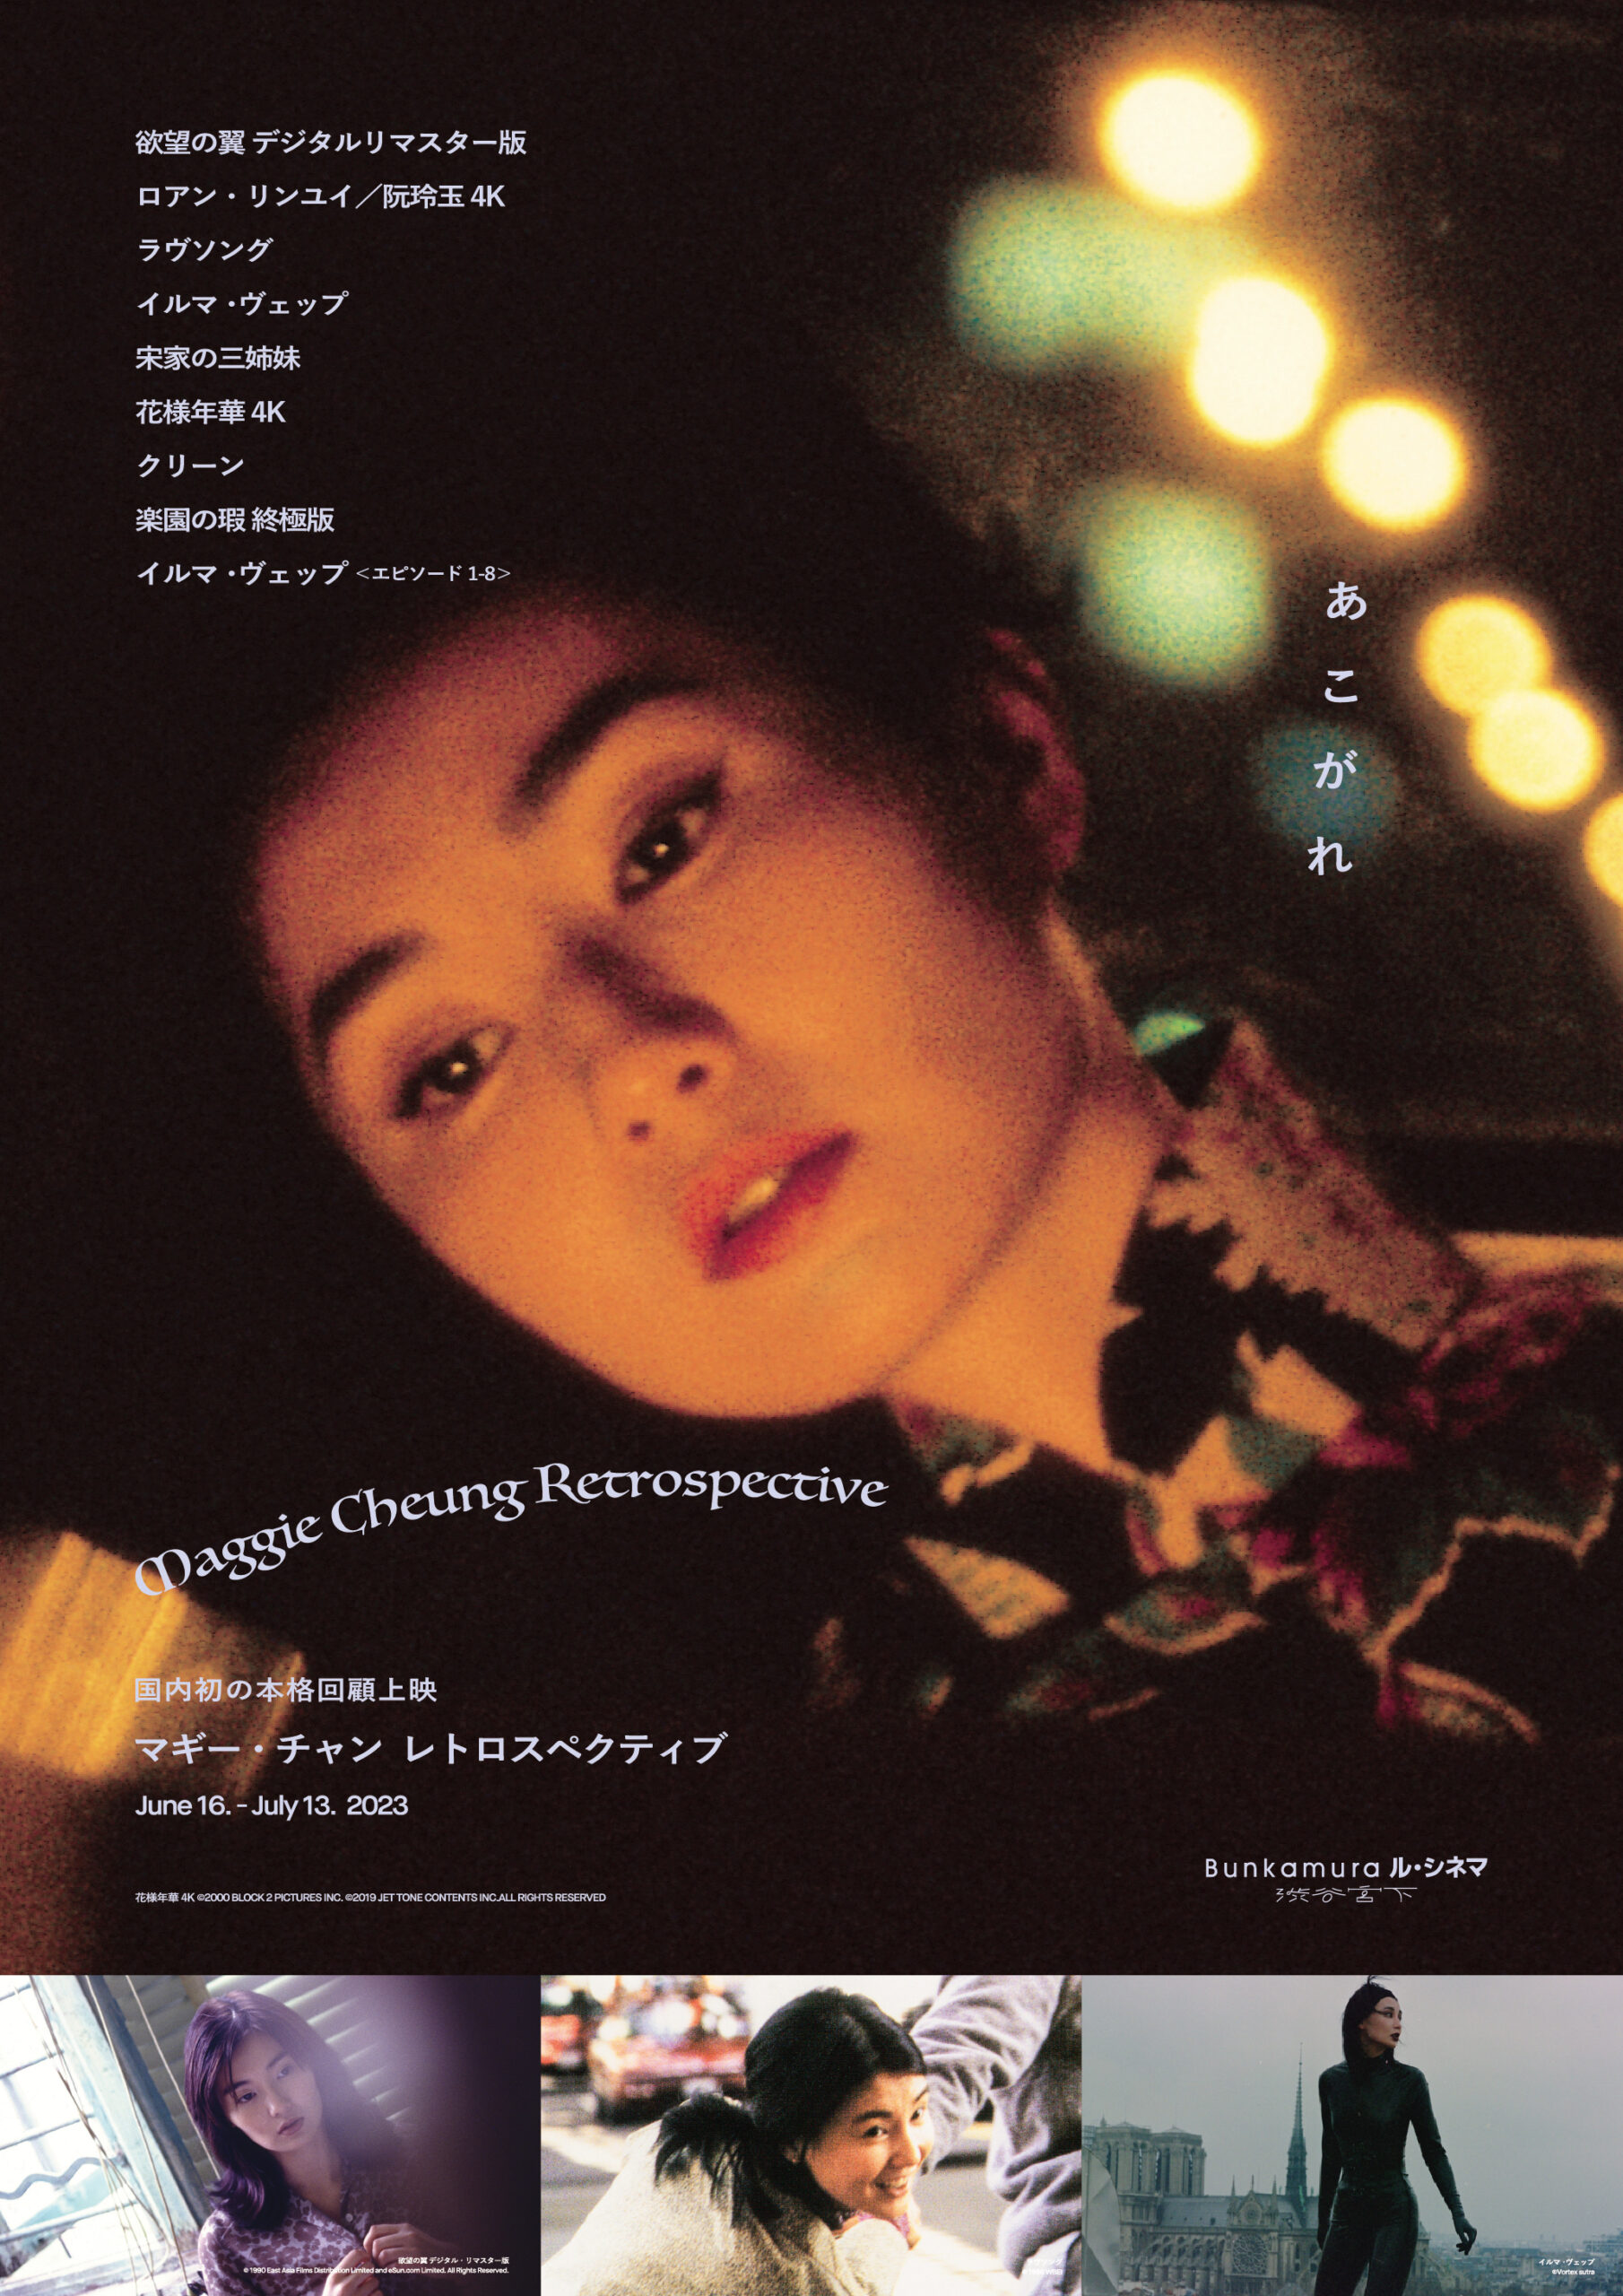 日本初本格的回顧上映「マギー・チャン レトロスペクティブ」に『宋家の三姉妹』＆「イルマ・ヴェップ」追加上映決定 上映スケジュールも解禁 -  WEEKEND CINEMA